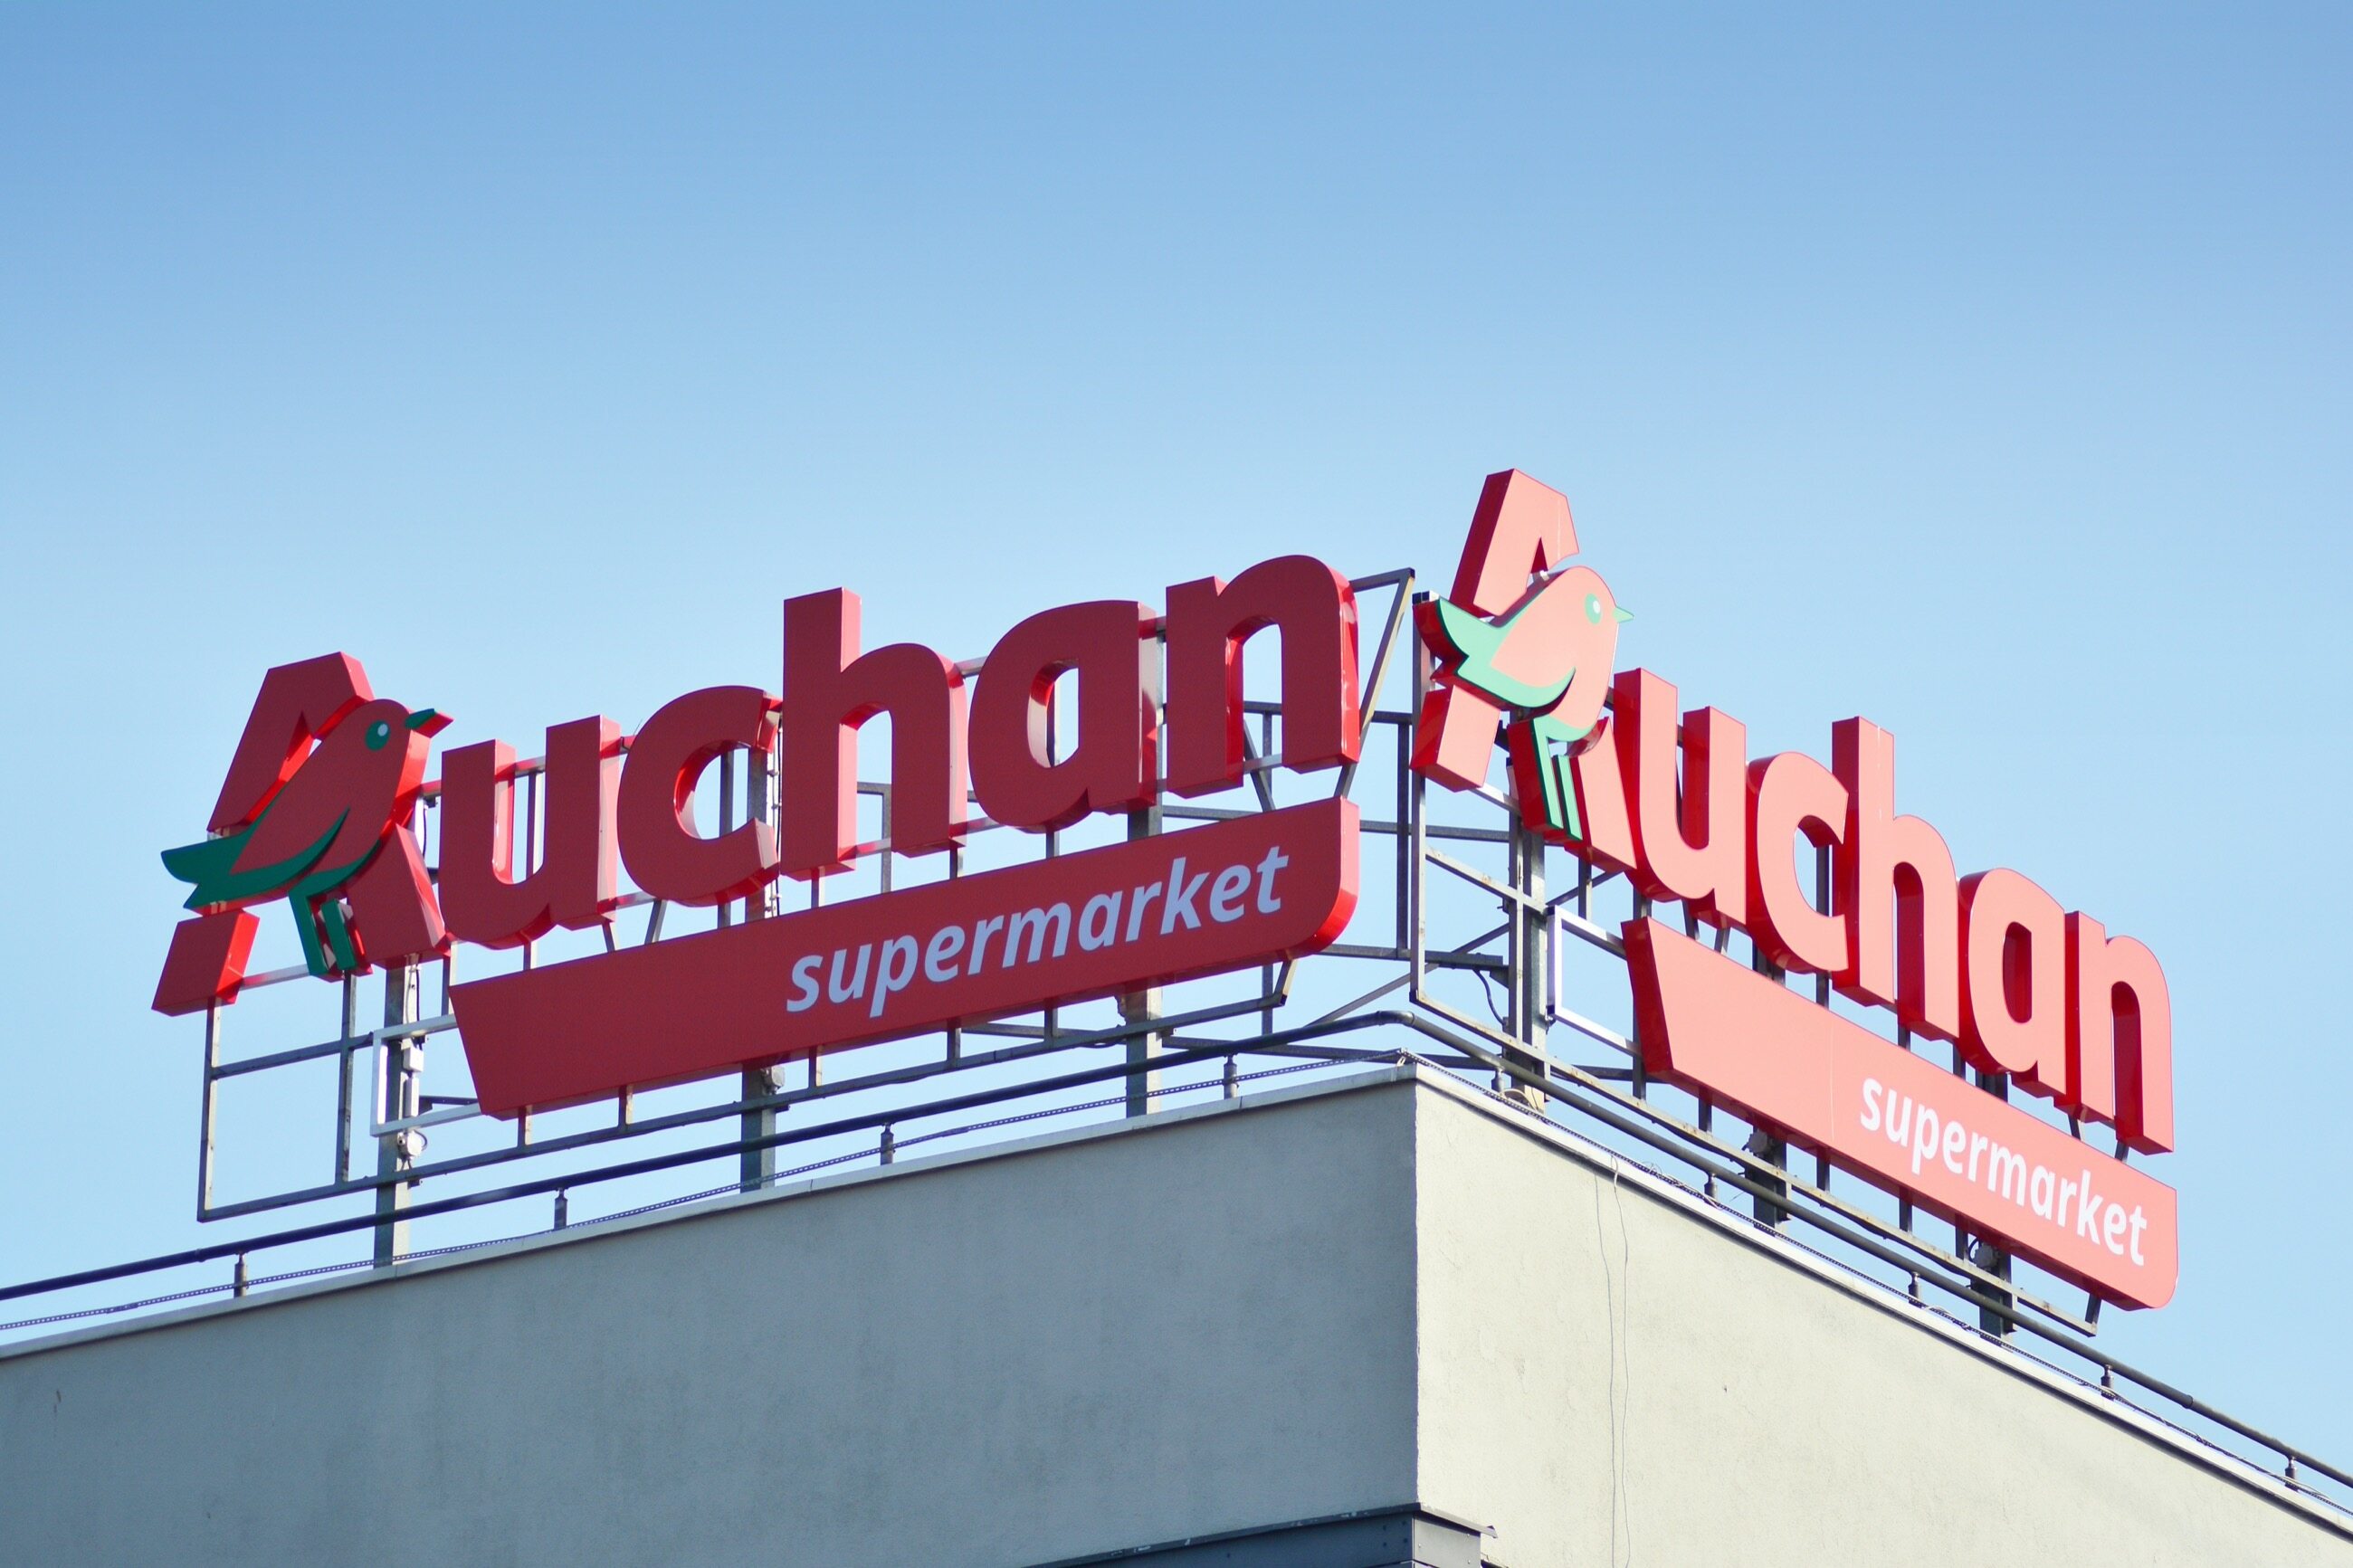 Gdy wybieramy się na zakupy do Auchan idziemy do: